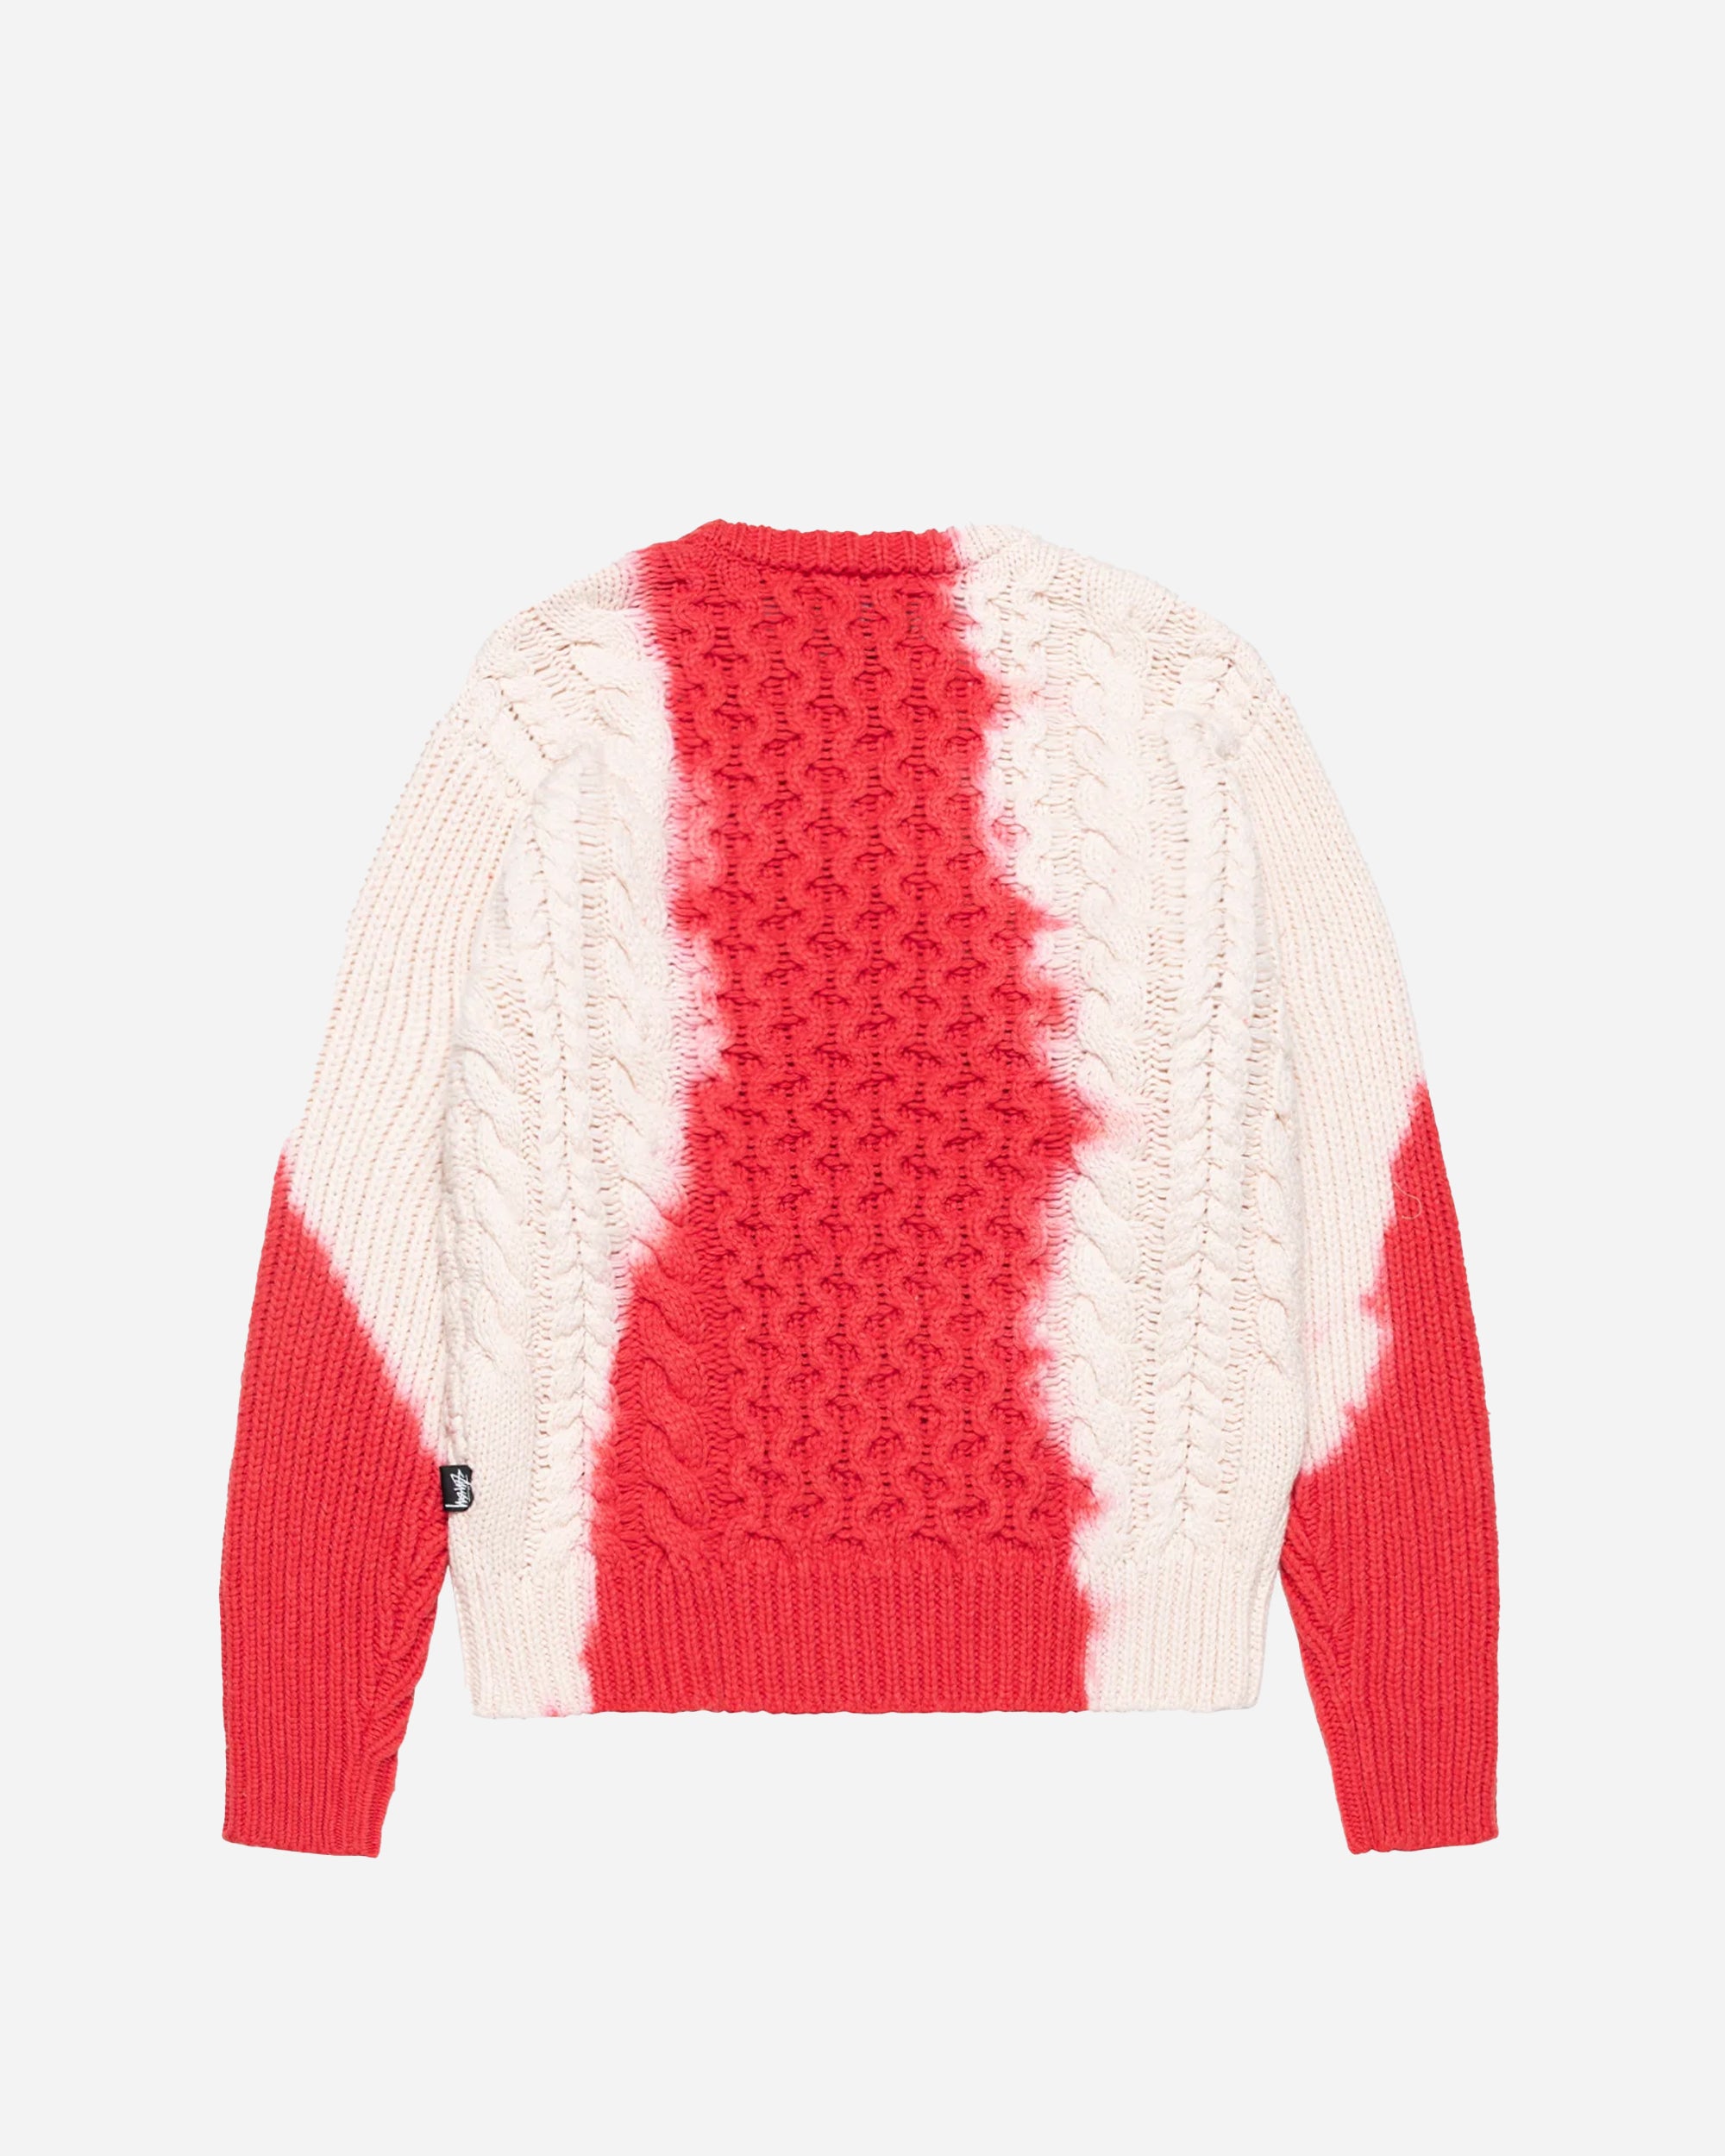 Stüssy Tie Dye Fisherman Sweater red 117188-0601